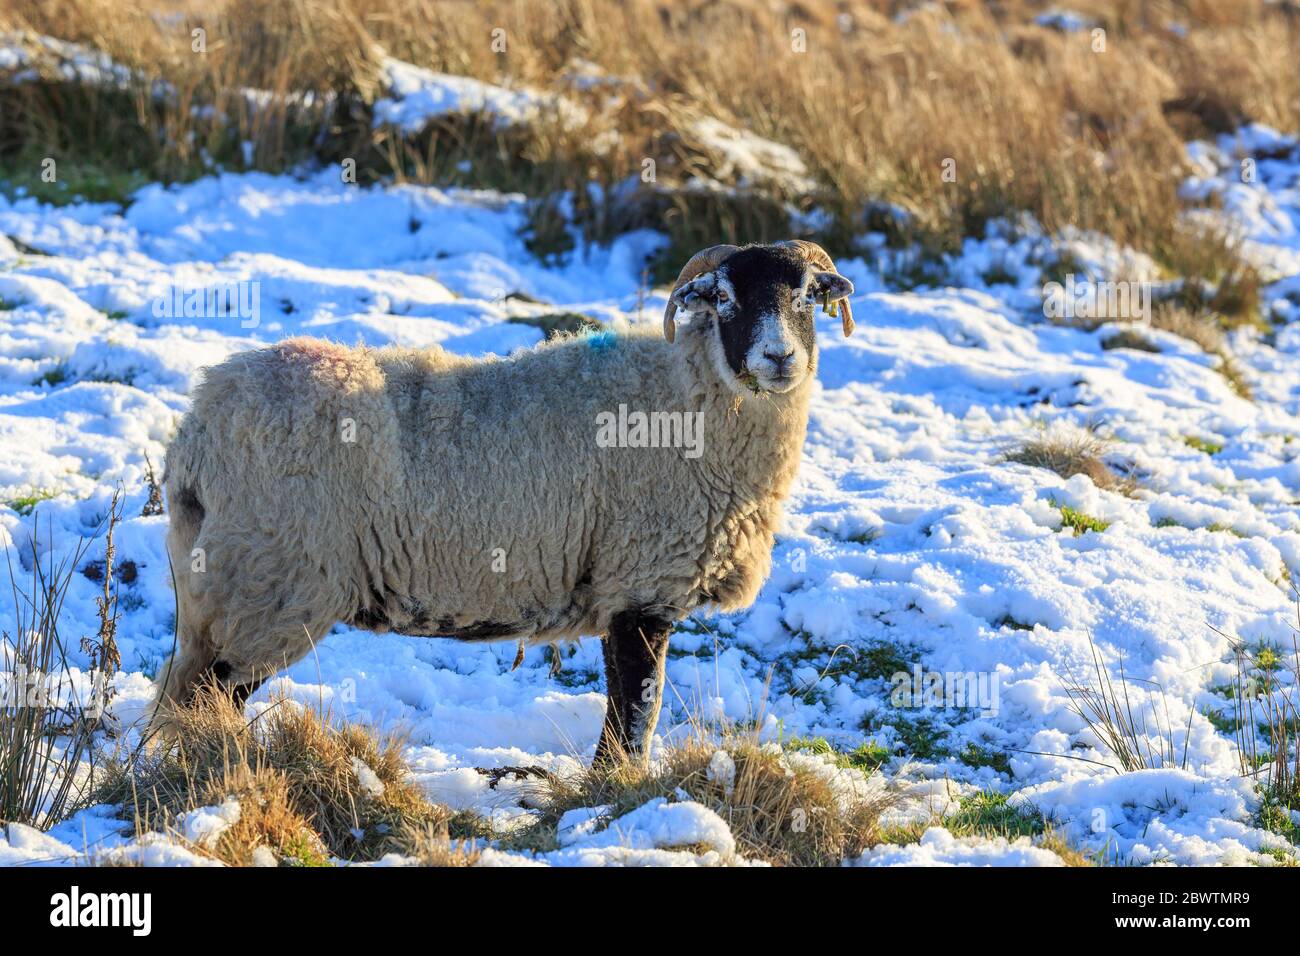 Moutons écossais Blackface debout dans un pré couvert de neige Banque D'Images